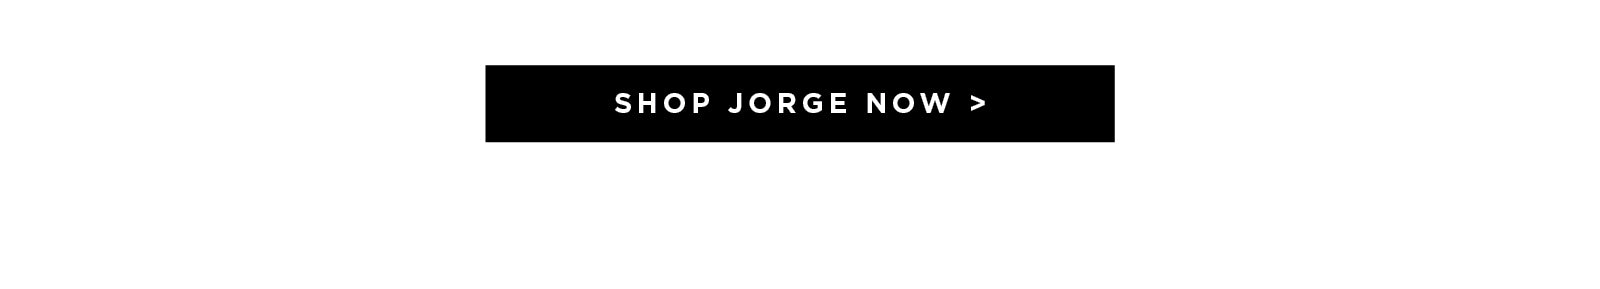 Shop Jorge now